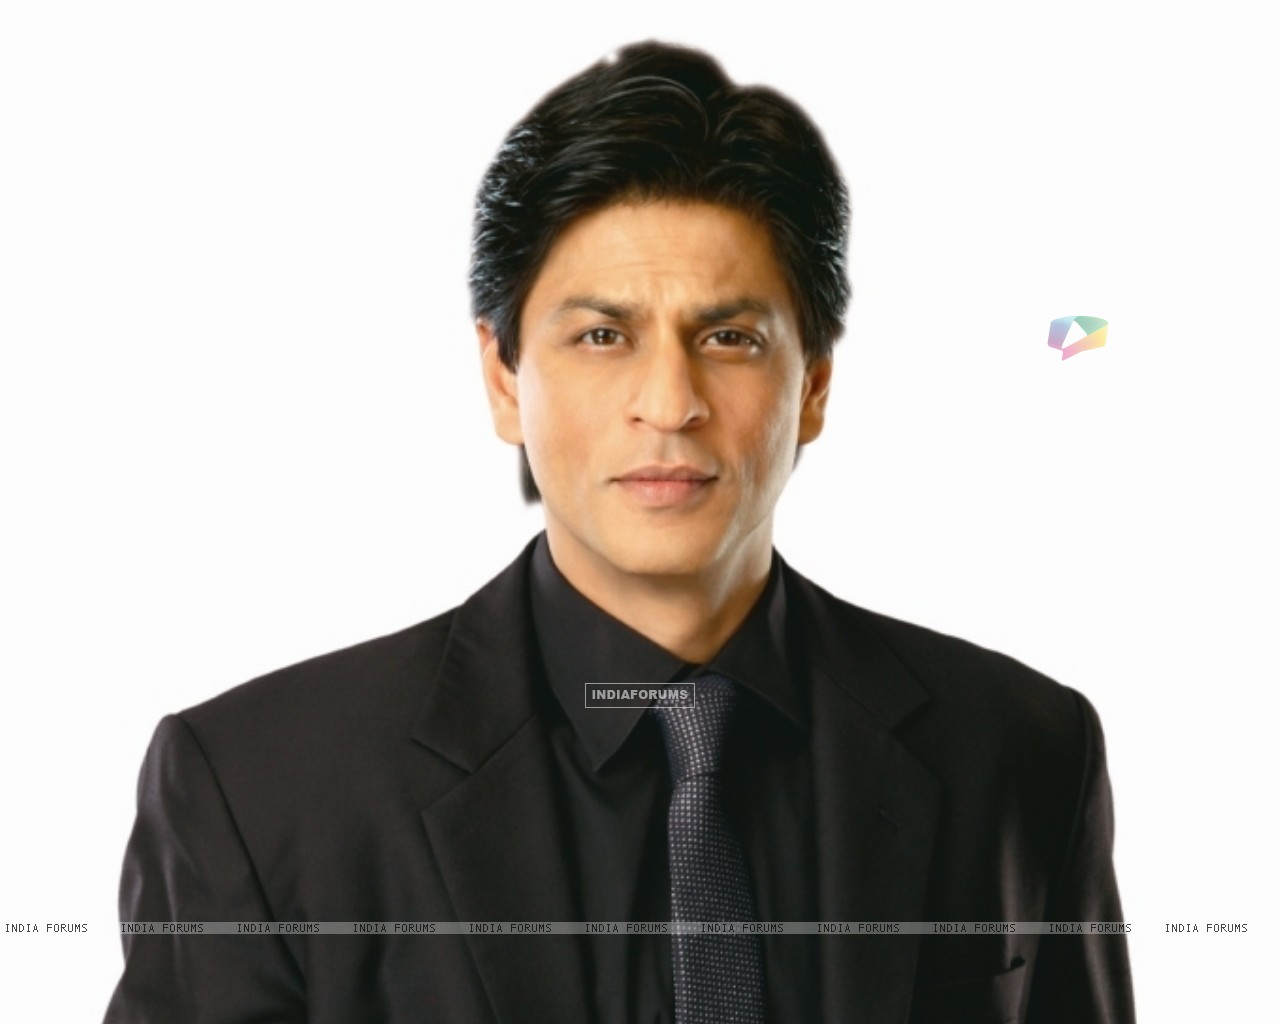 Shah Rukh Khan - Images